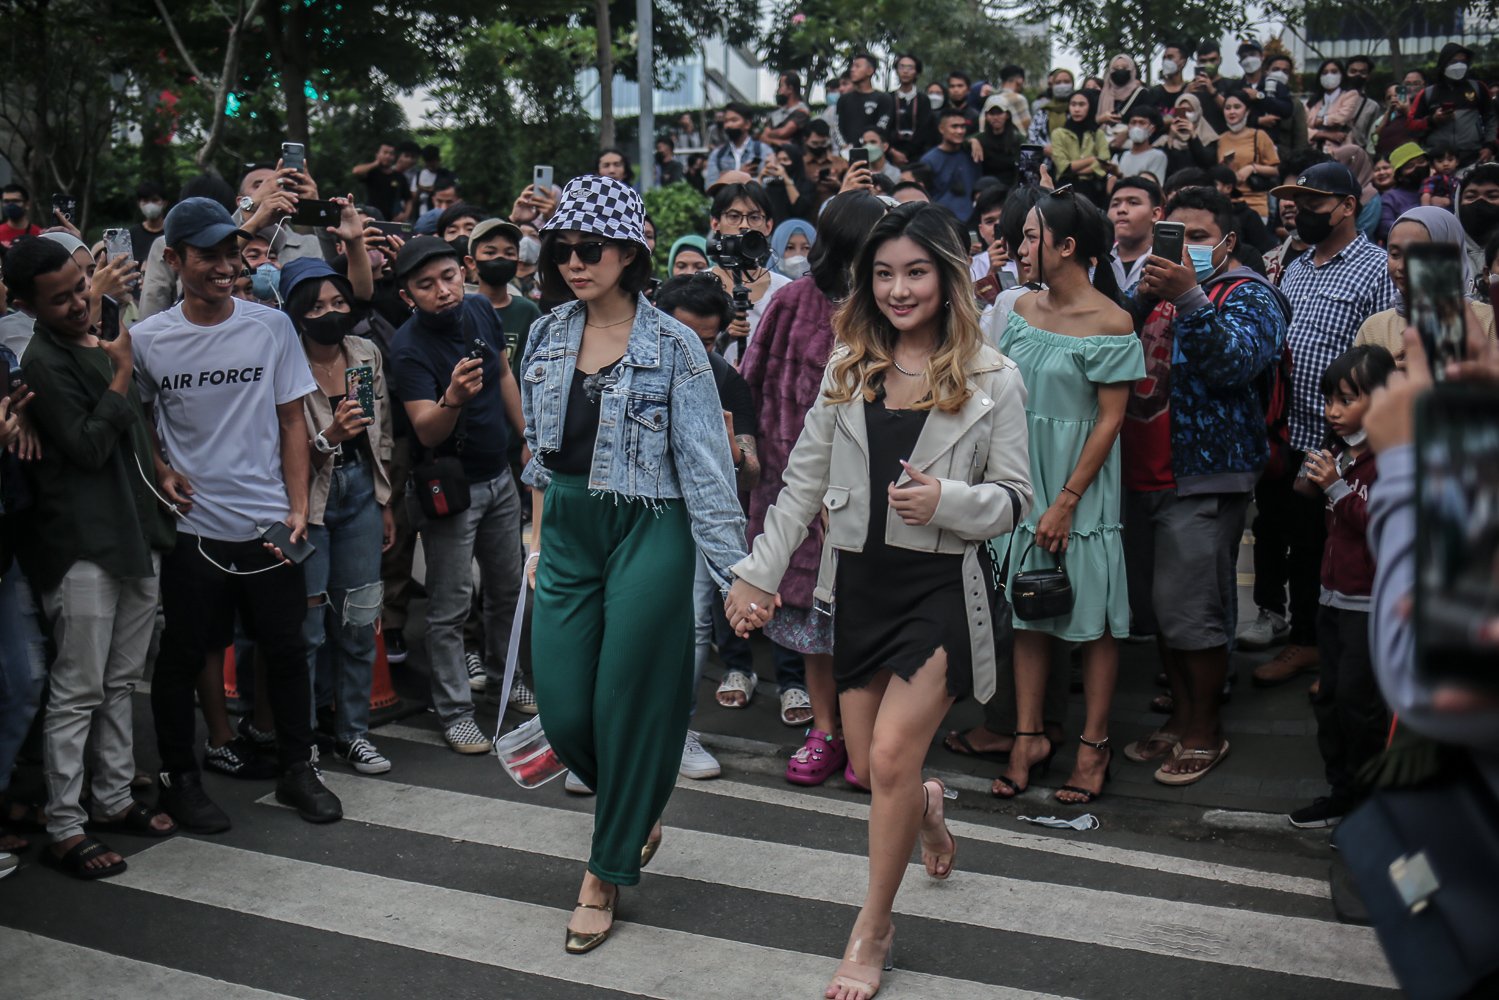 Aktris Gisella Anastasia bersama temannya berjalan memperagakan busana di kawasan Stasiun BNI City, Jakarta, Senin (25/7/2022). Setelah sebelumnya viral karena unggahan pegiat sosial media TikTok tentang anak-anak remaja asal wilayah pinggiran Jakarta, sa